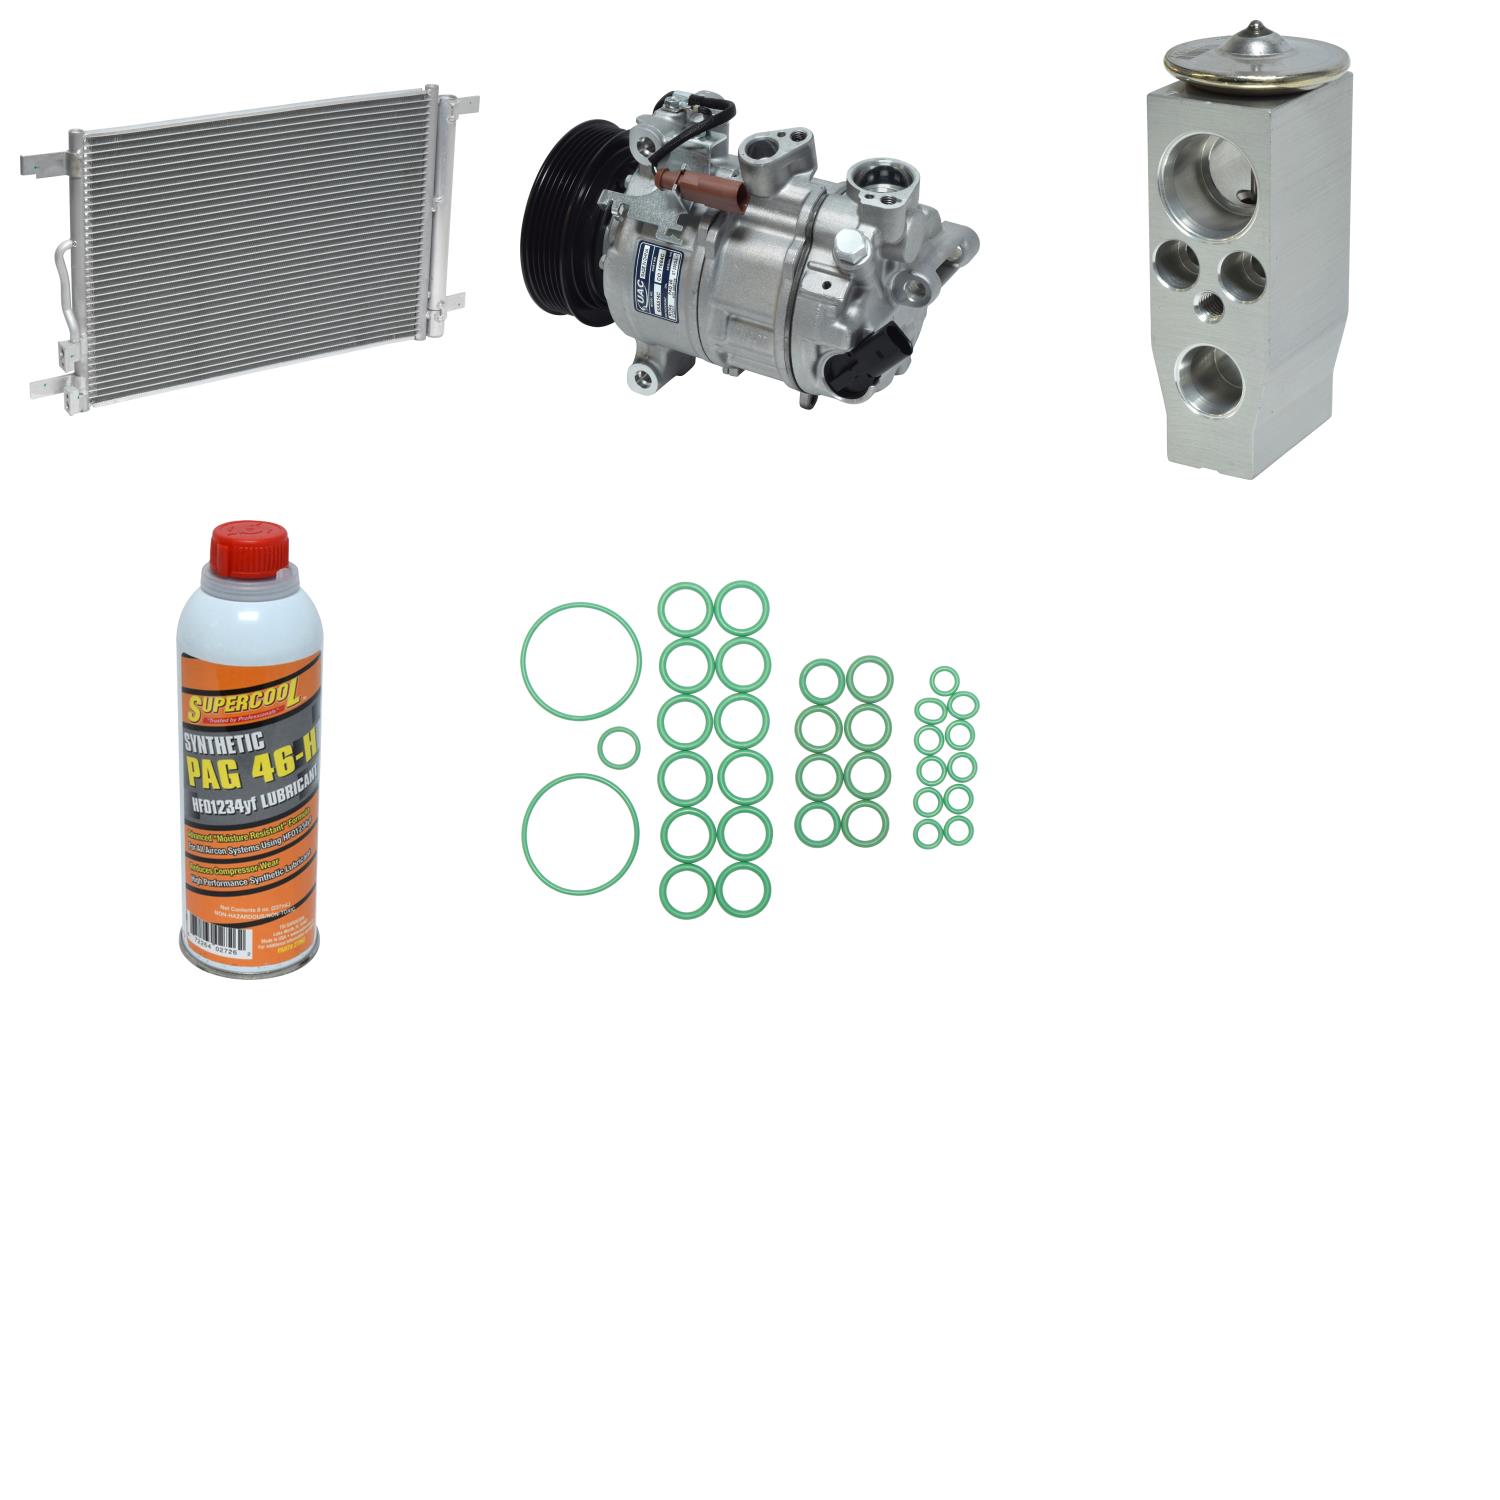 Pit Stop Auto Group® A/C Compressor Kit - 1057261